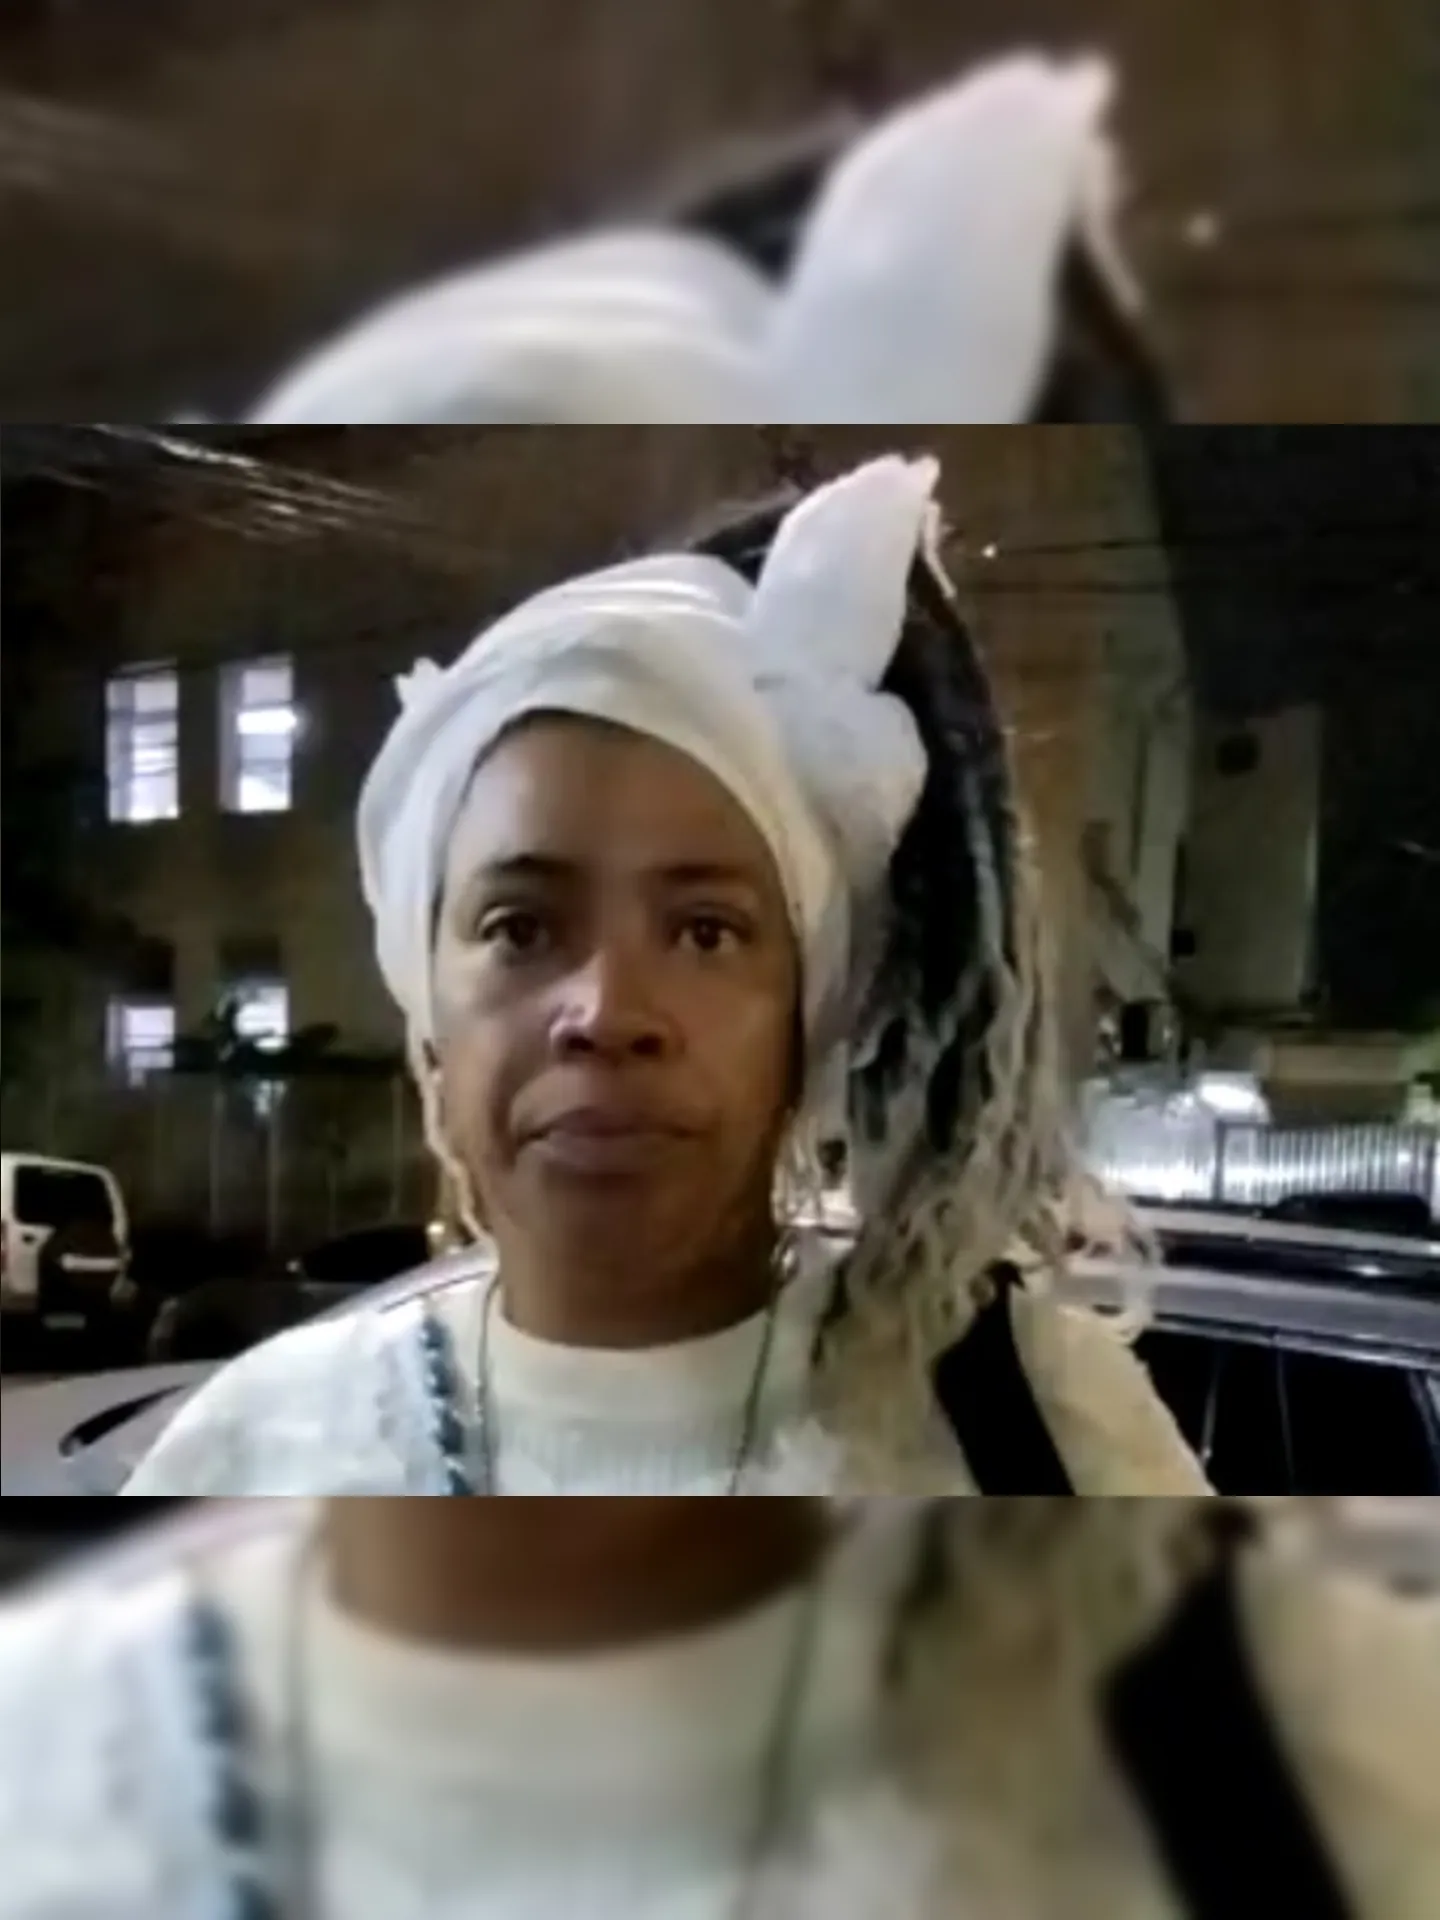 Ana Paula Santana de Souza, conhecida como Iya Paula de Odé, foi impedida de prestar atendimento religioso